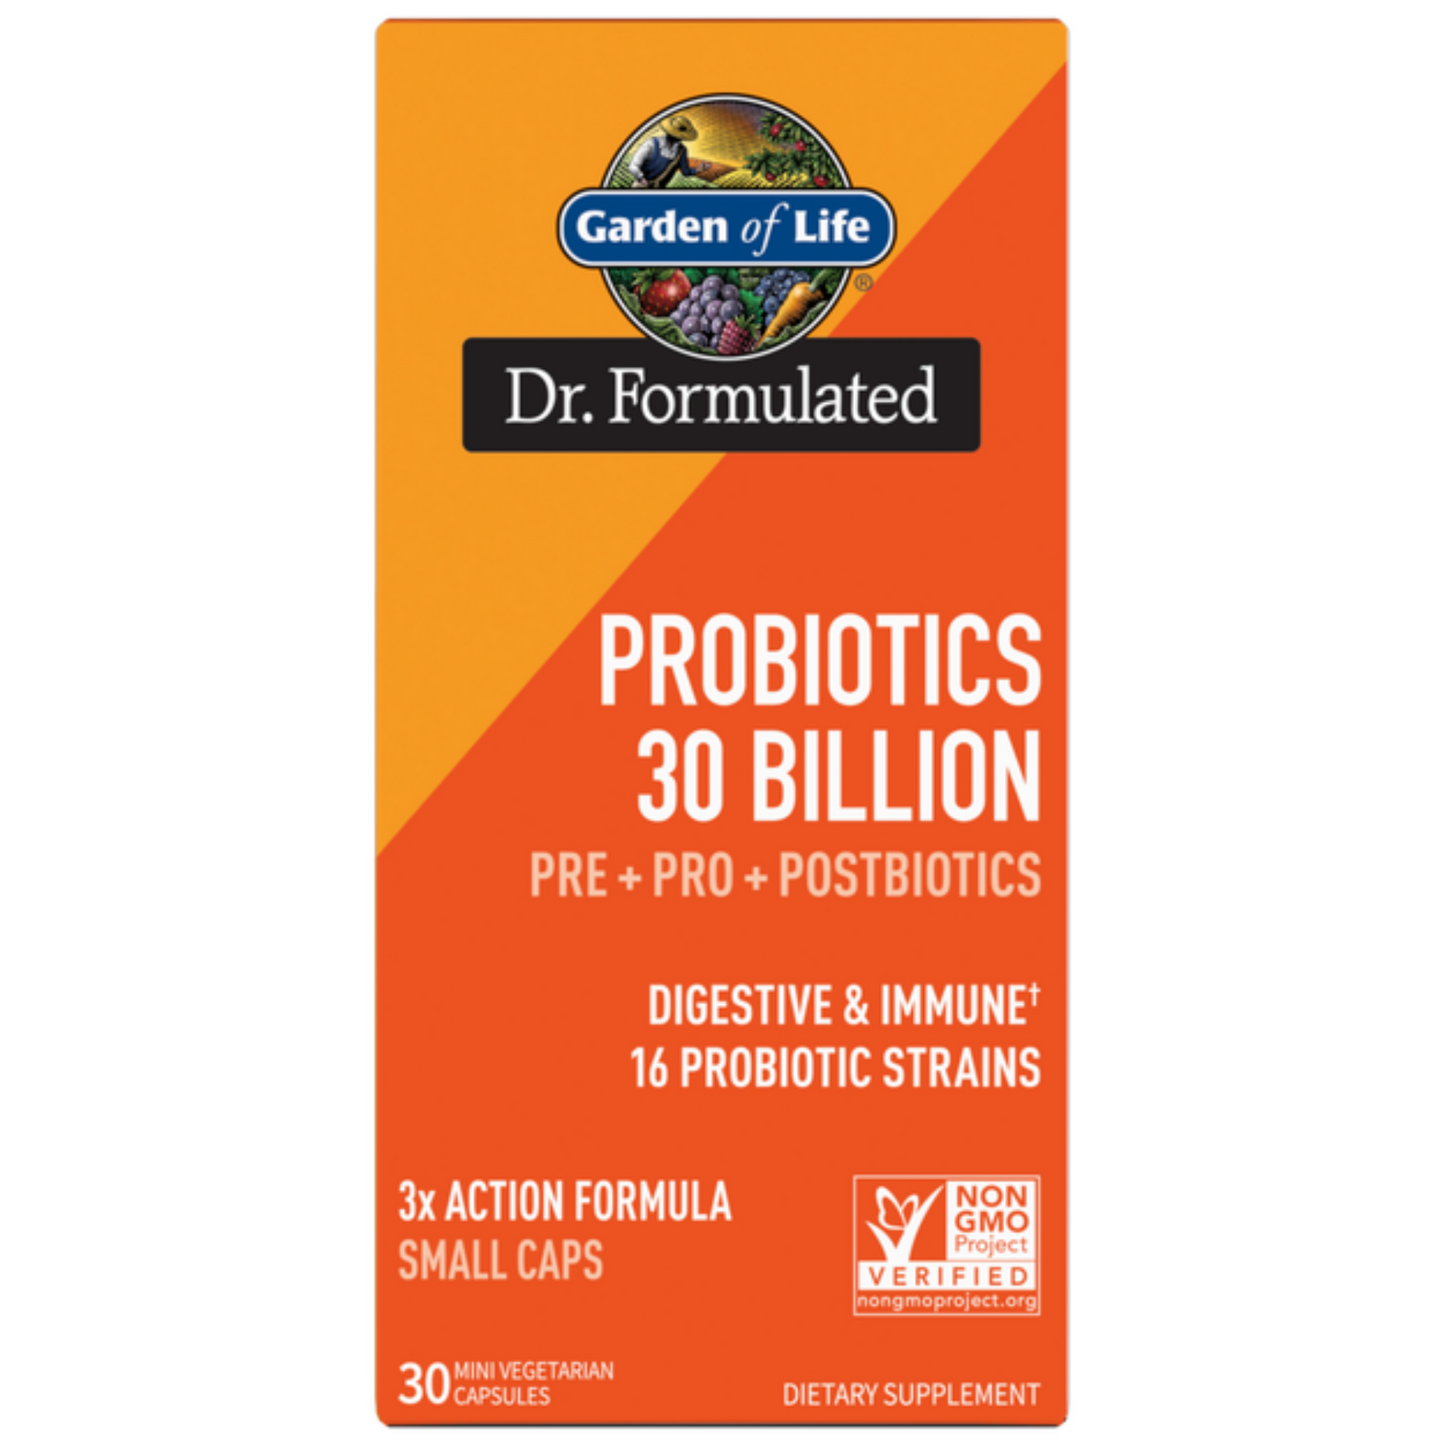 Garden of Life Probiotics 30 Billion Capsules (30 count) #10084921